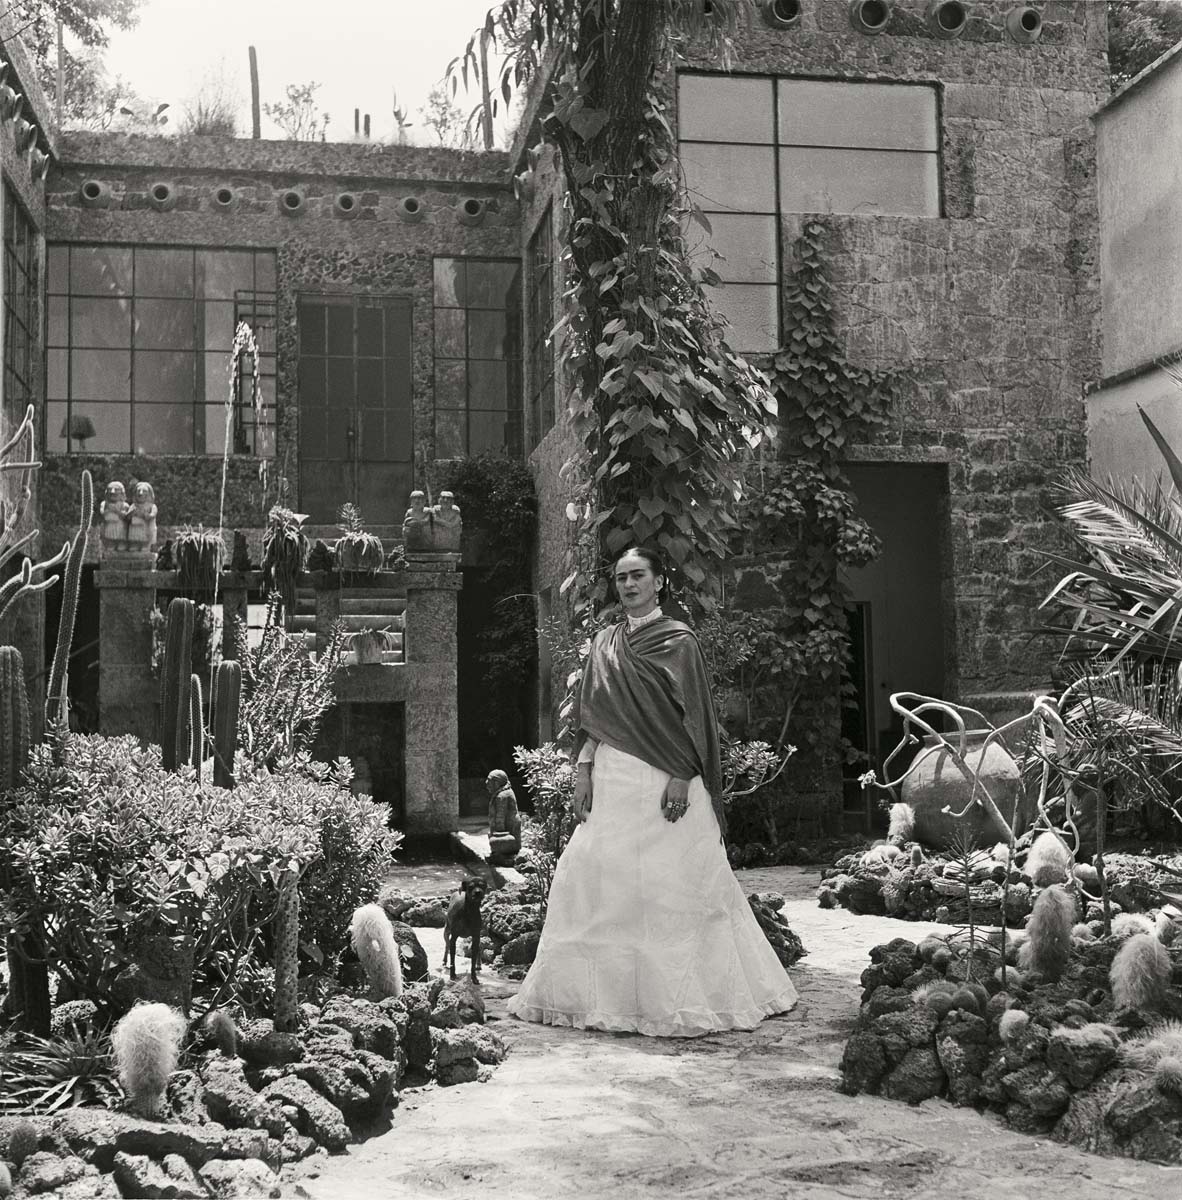 Frida Kahlo fotos casa Mexico Gisele Freund